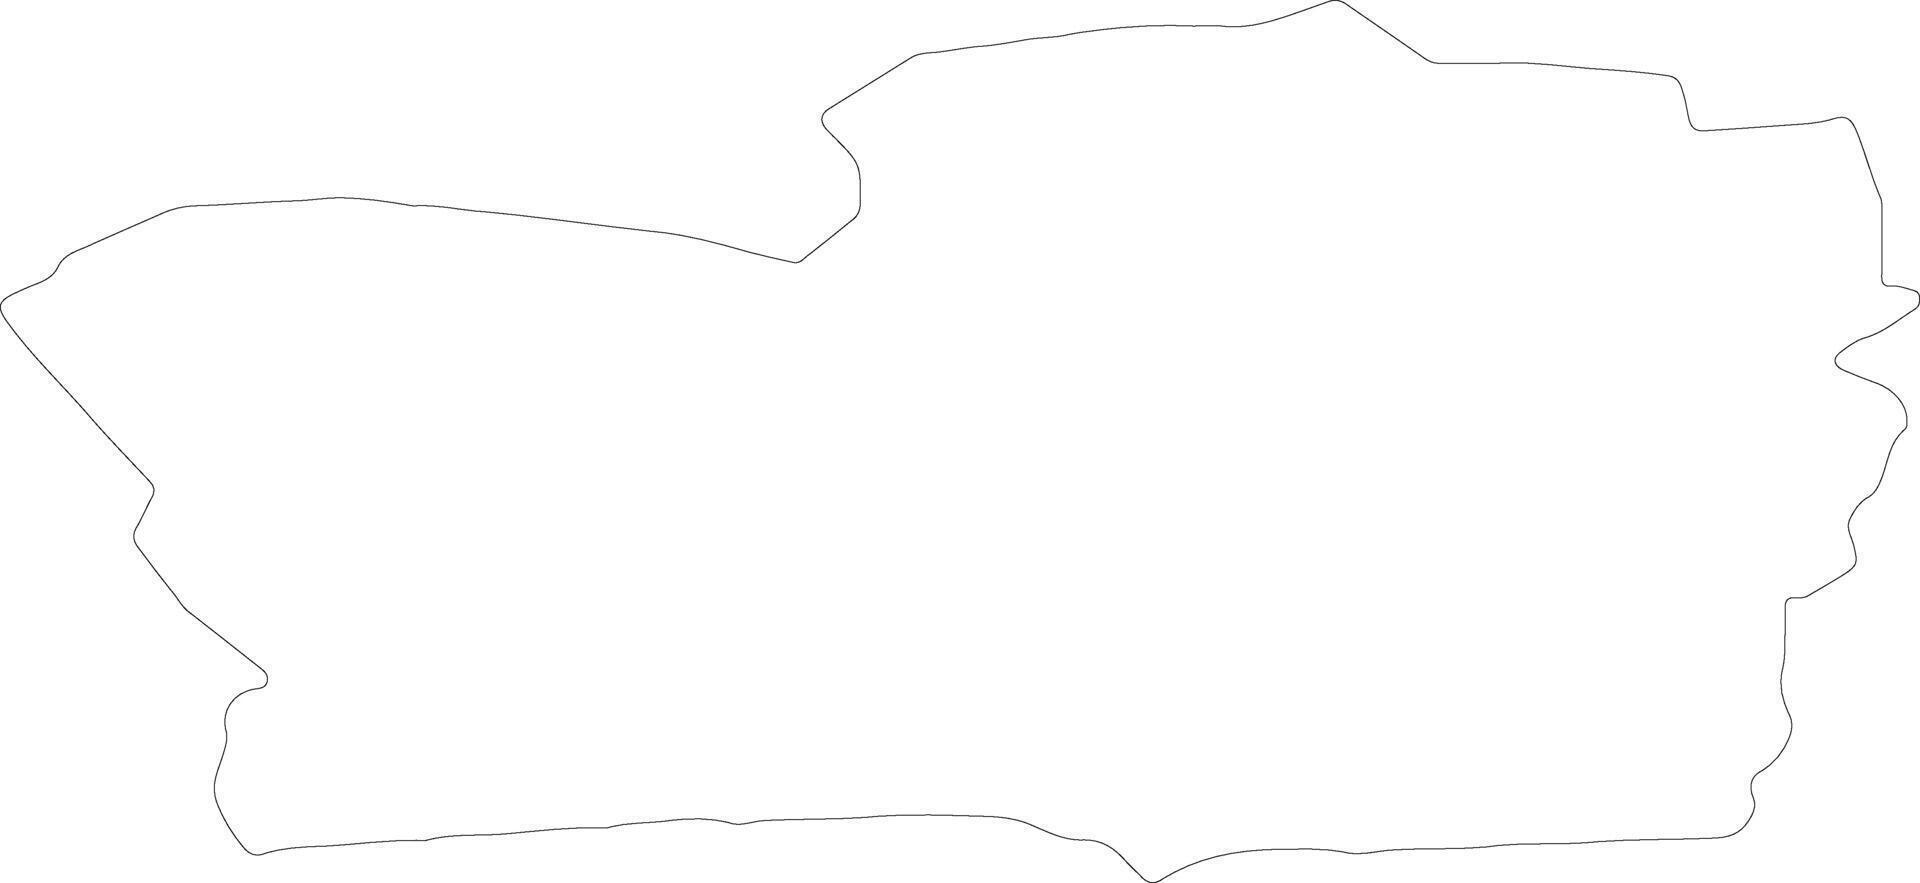 smiltènes Lettonie contour carte vecteur